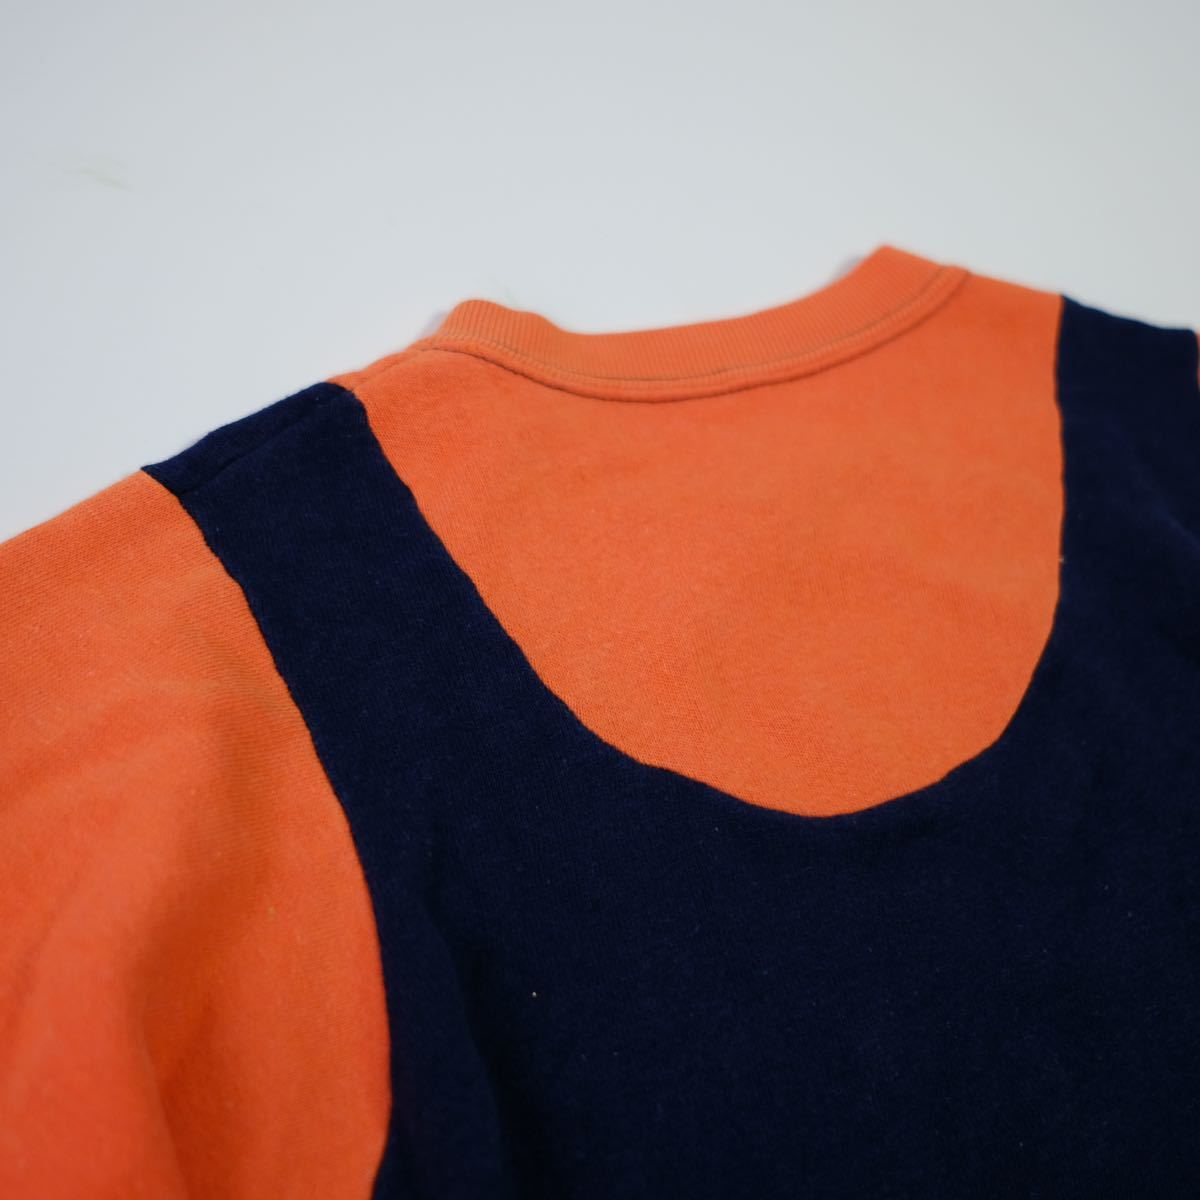 [1960~70s] Vintage 2 цветный короткий рукав спортивная фуфайка футболка б/у одежда лоскутное шитье дизайн USA производства за границей запас 